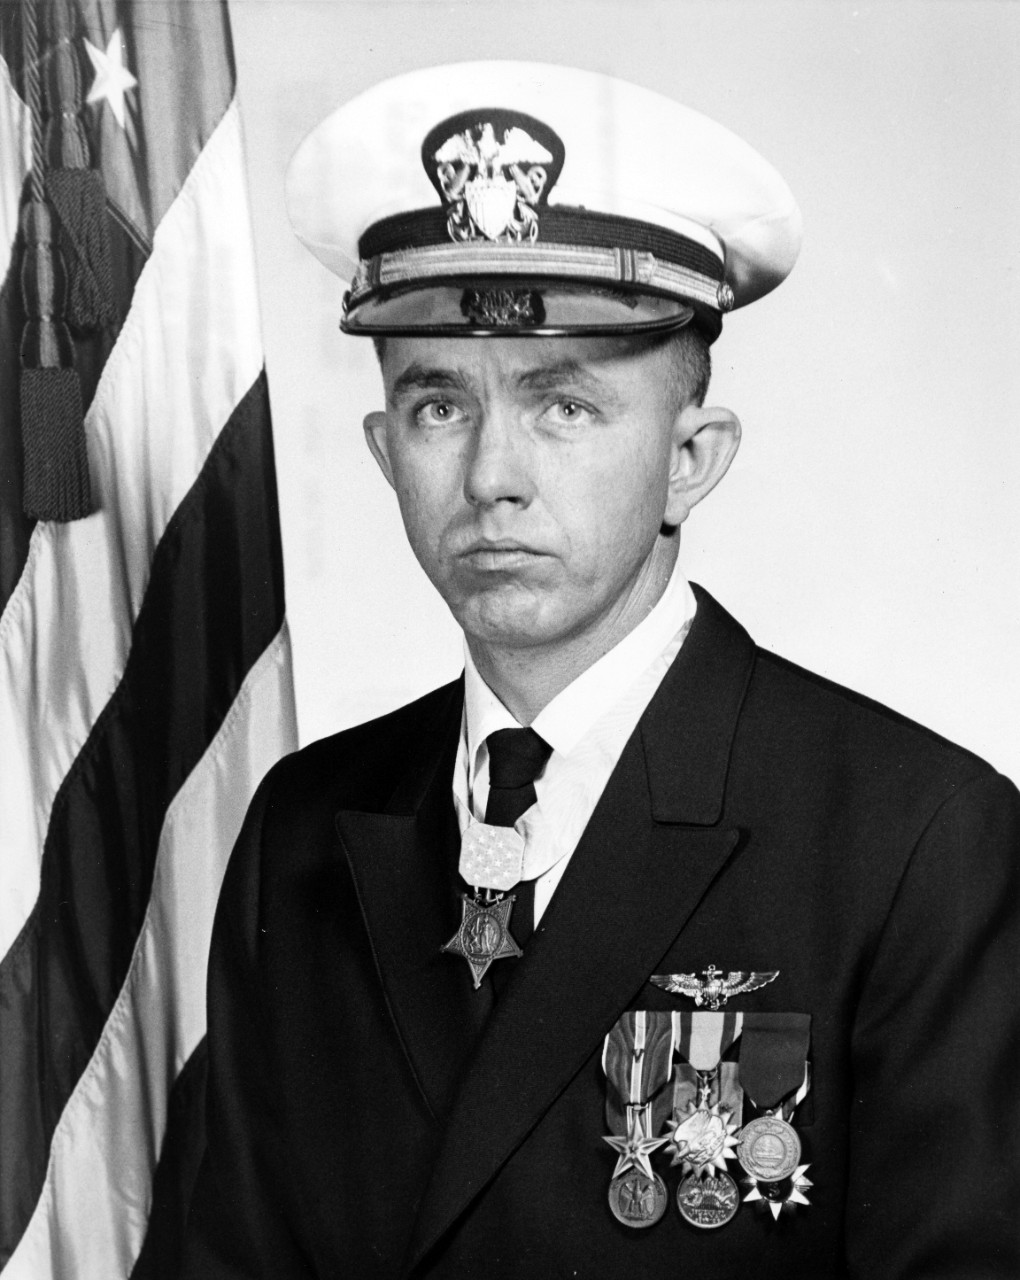 Medal of Honor holder LT Clyde E. Lassen, USN - February 3, 1969. 